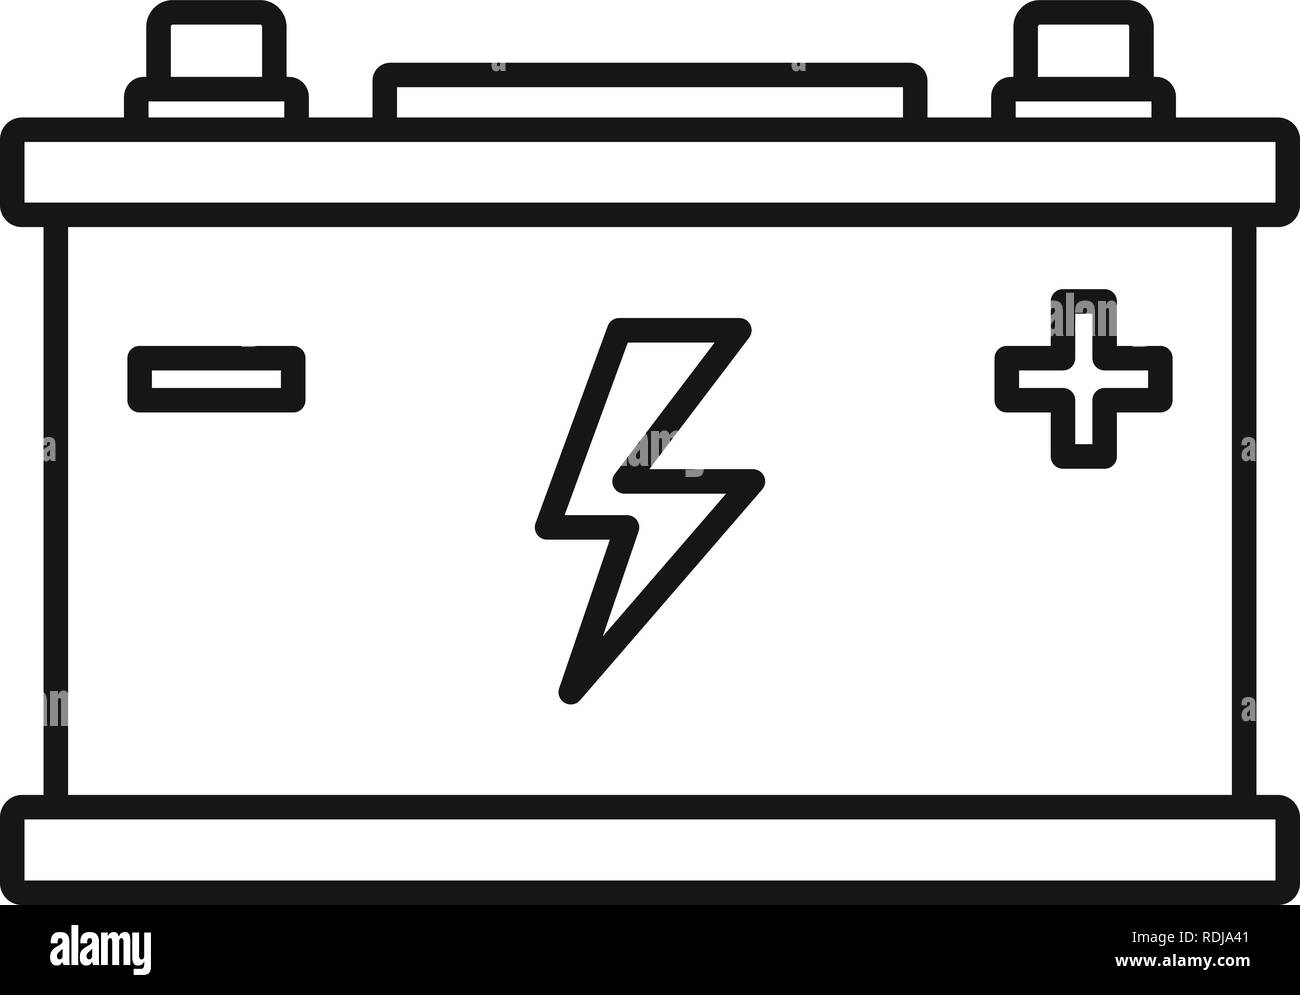 Vektor-autobatterie mit verbundenen klemmen linienskizze illustration